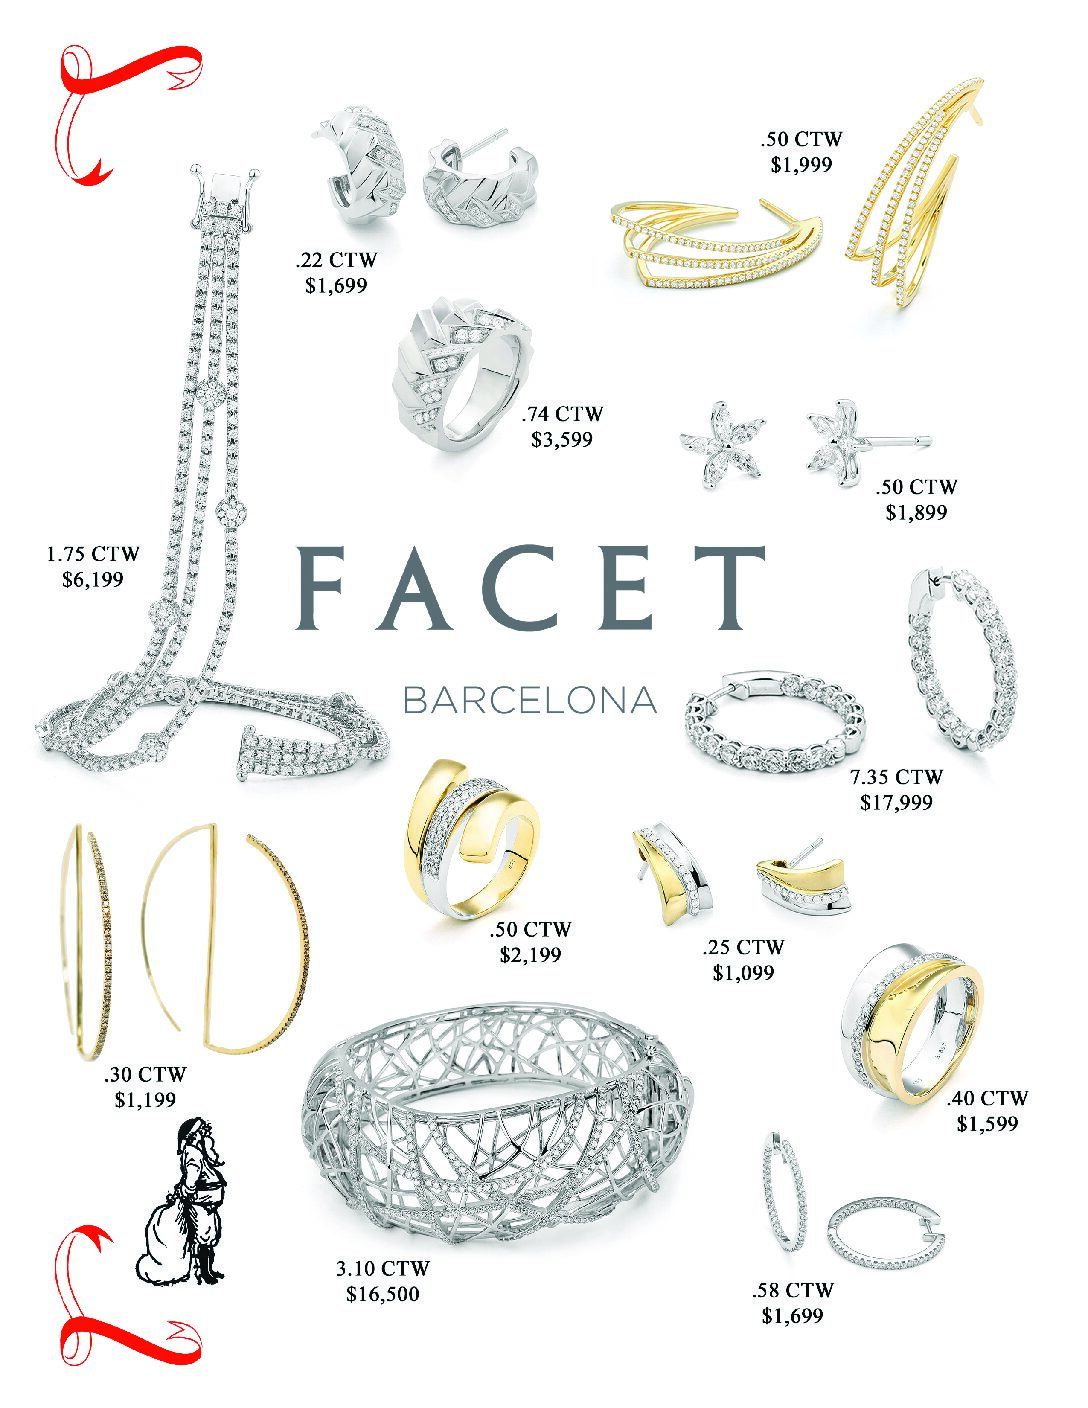 Facet Barcelona Gift Guide